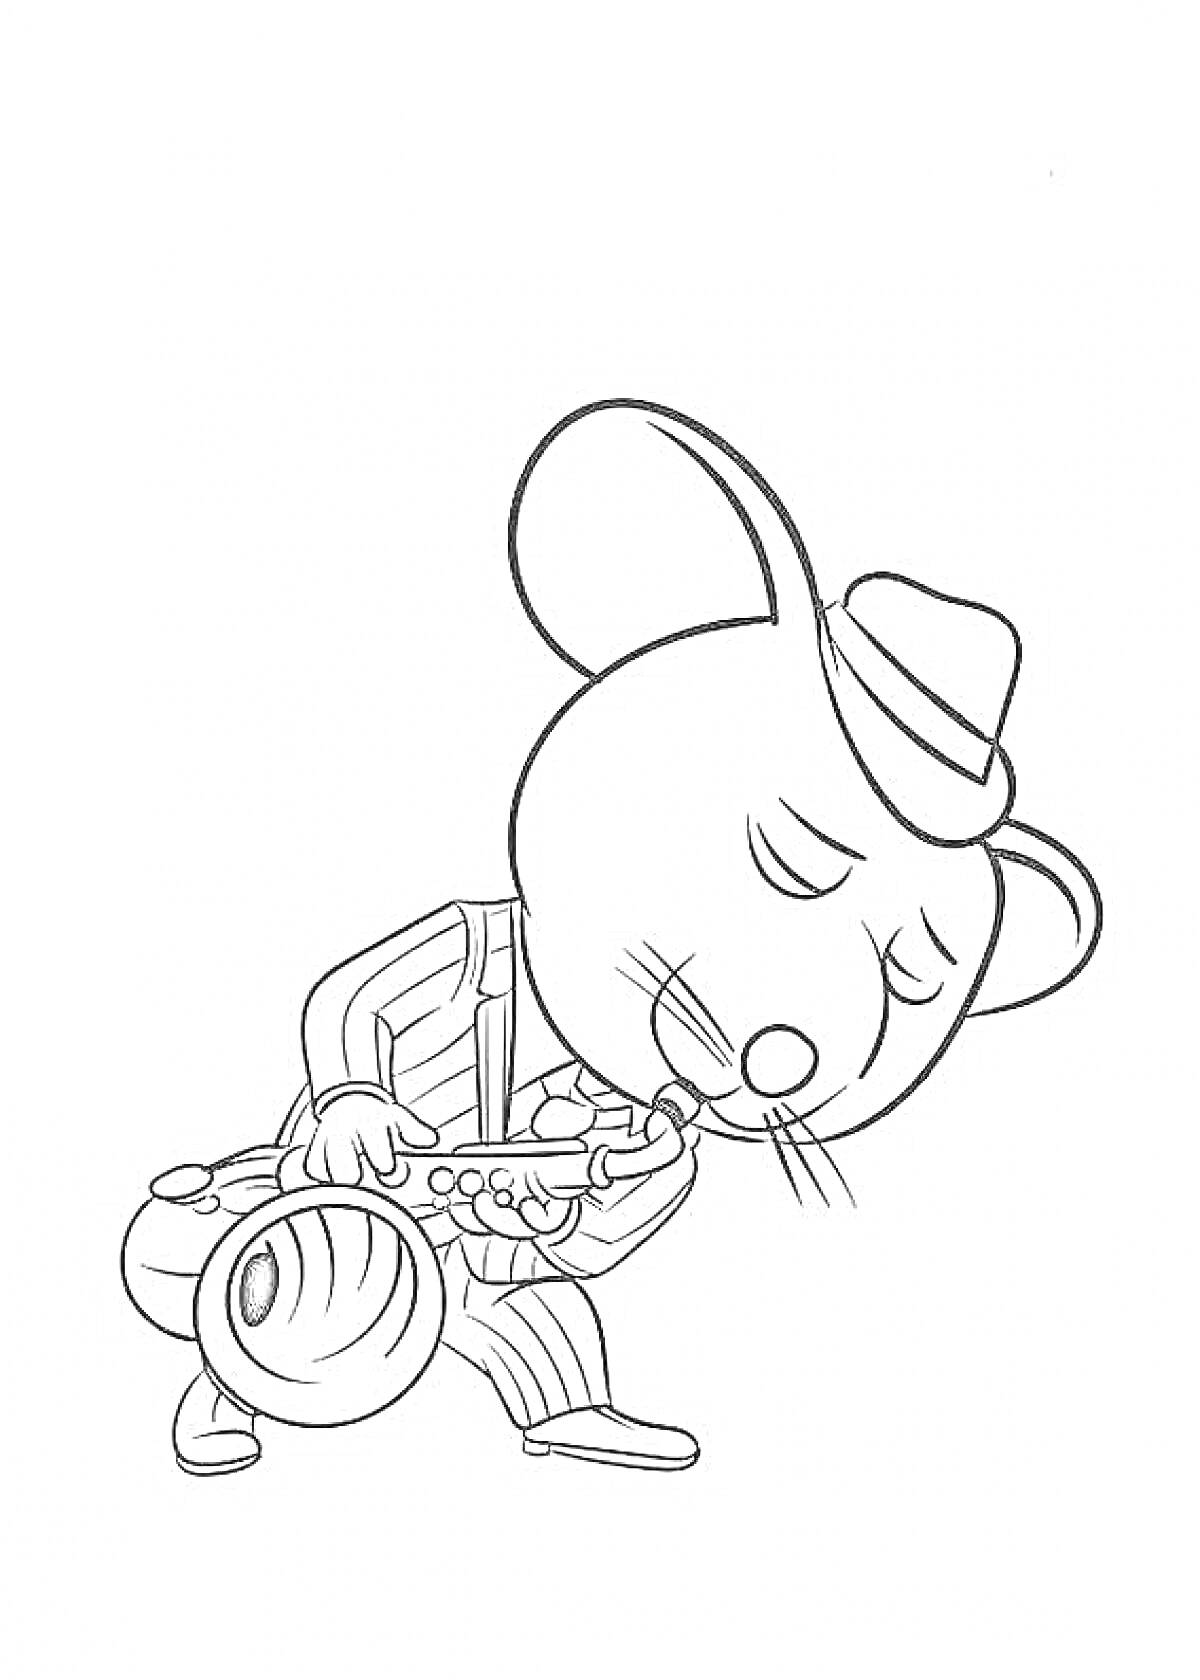 Мышь в шляпе, играющая на саксофоне в полосатом костюме